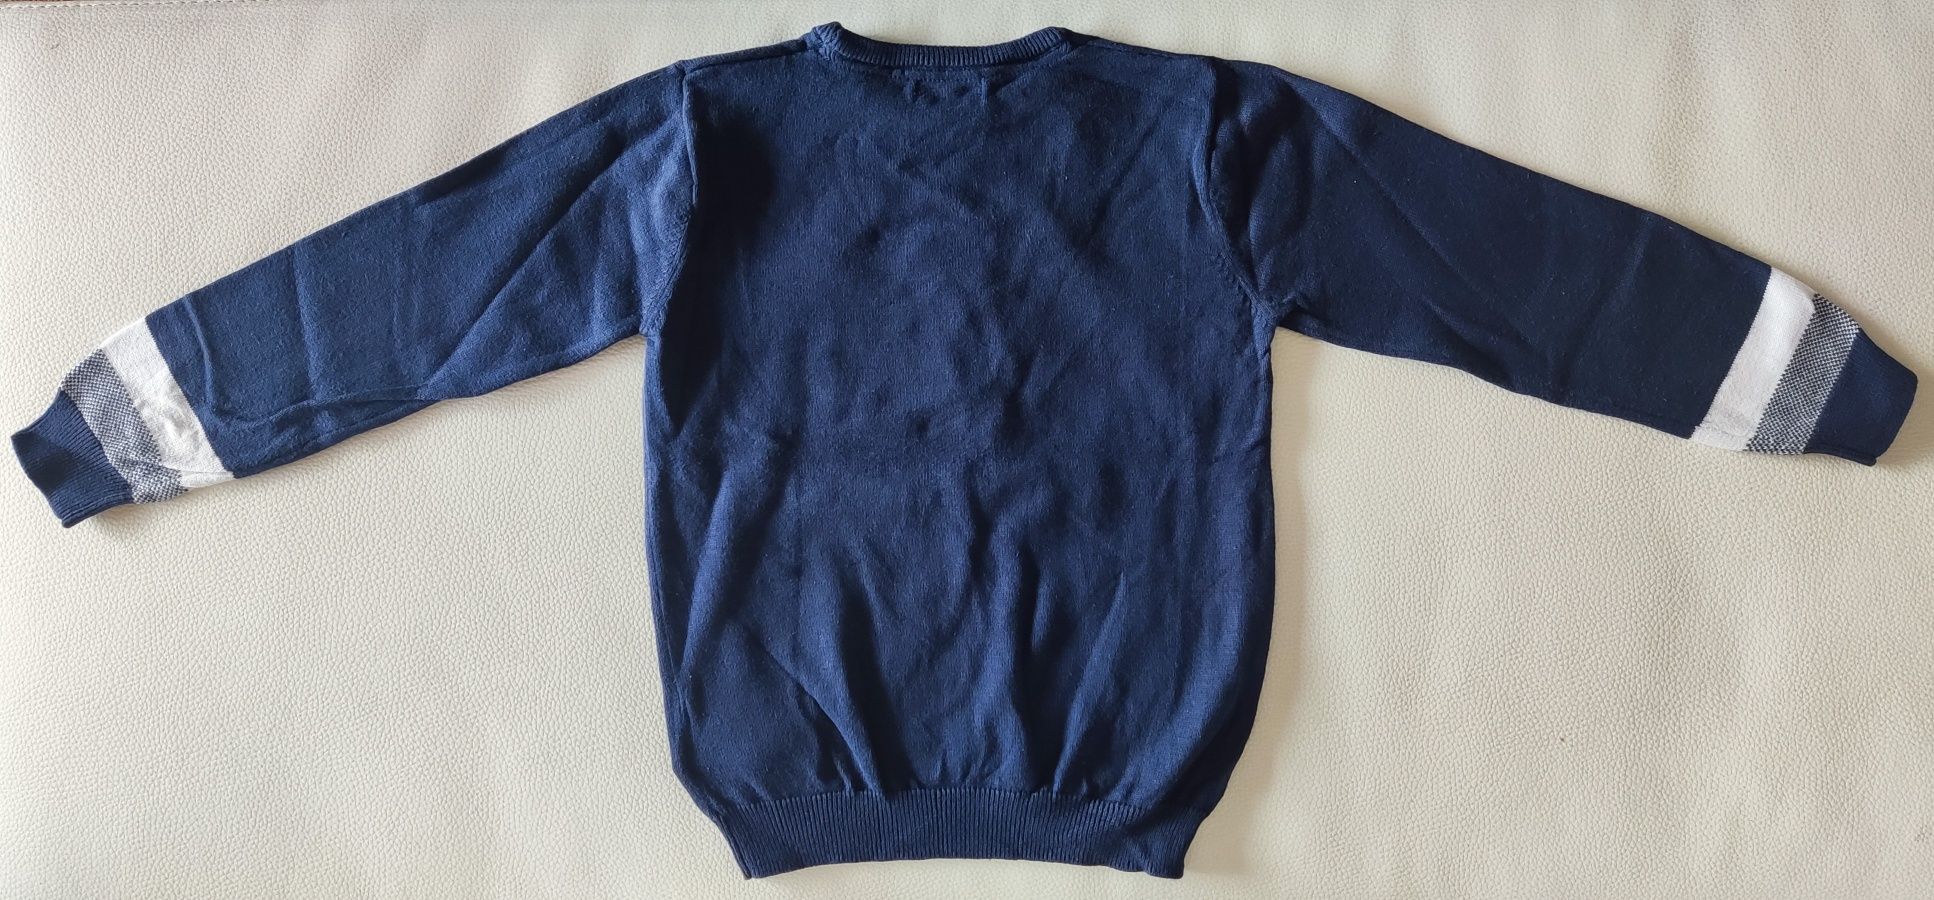 Camisolas malha algodão Mayoral 4-5 anos (110cm)